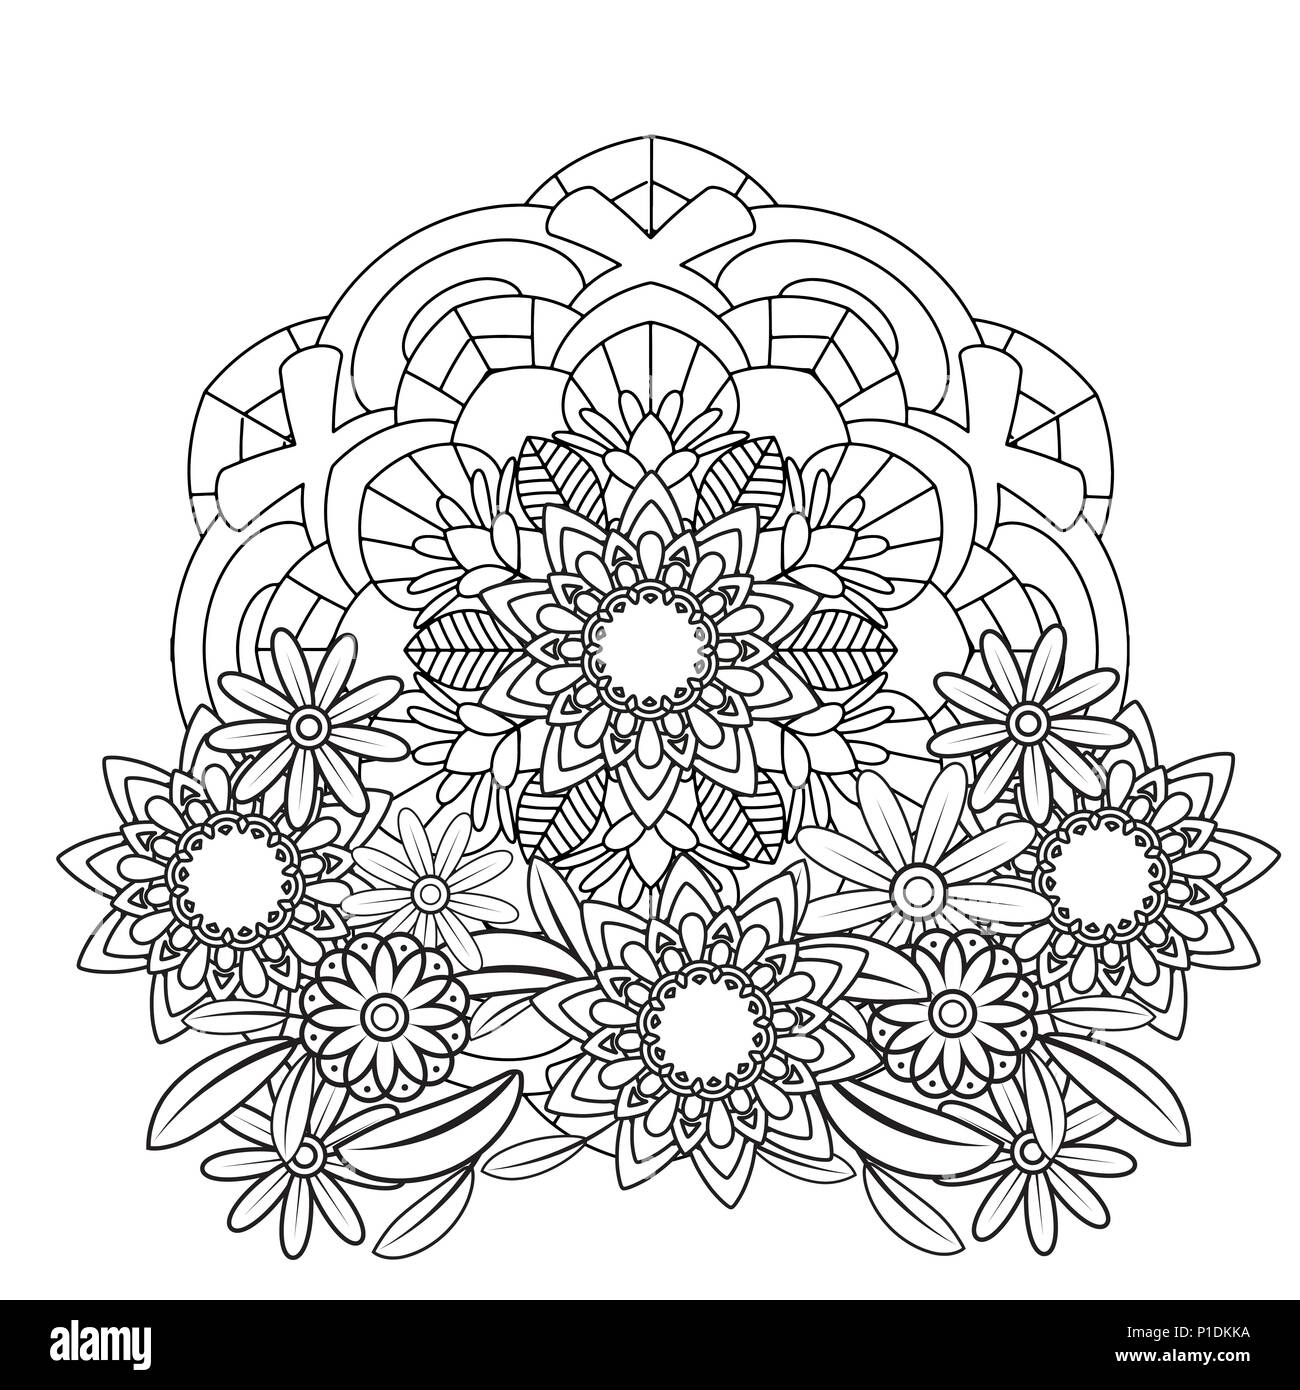 Livre de Coloriage pour Adultes Mandalas Designs Animaux: Des Mandalas, des  Fleurs, des motifs Paisley et bien plus encore: Livre de coloriage d'anima  (Paperback)